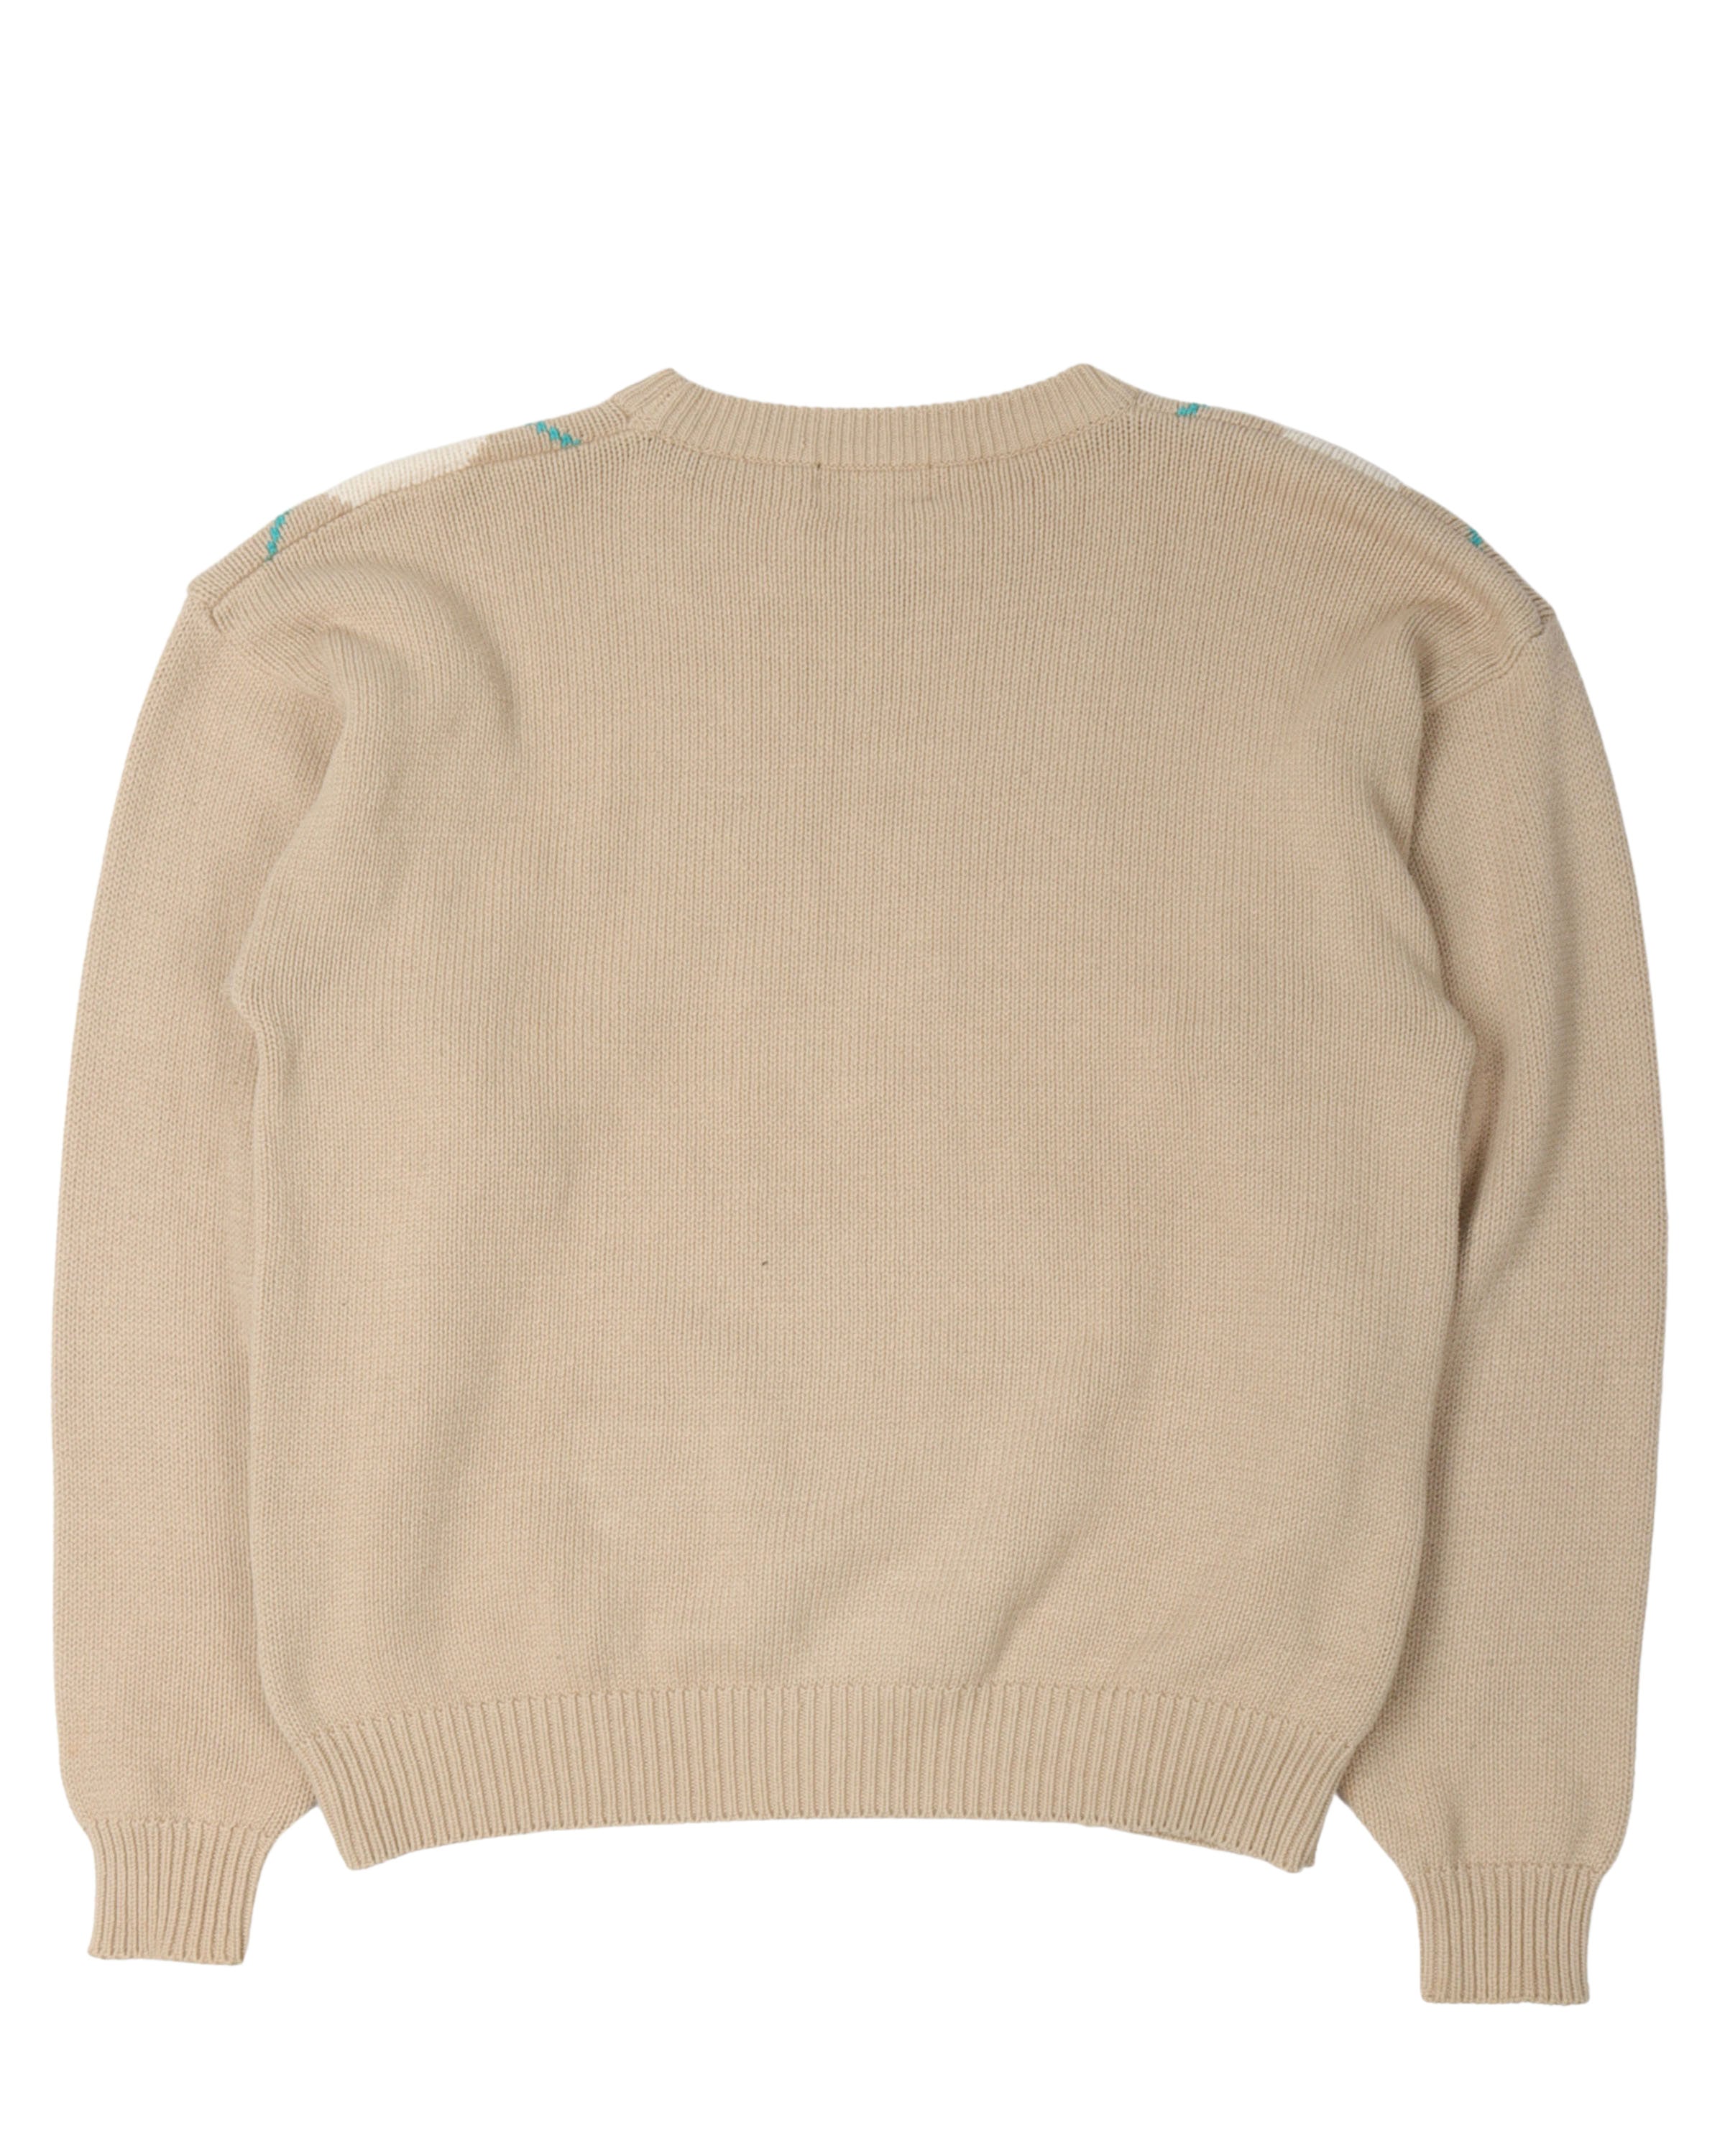 Vintage Plaid Cotton Sweater